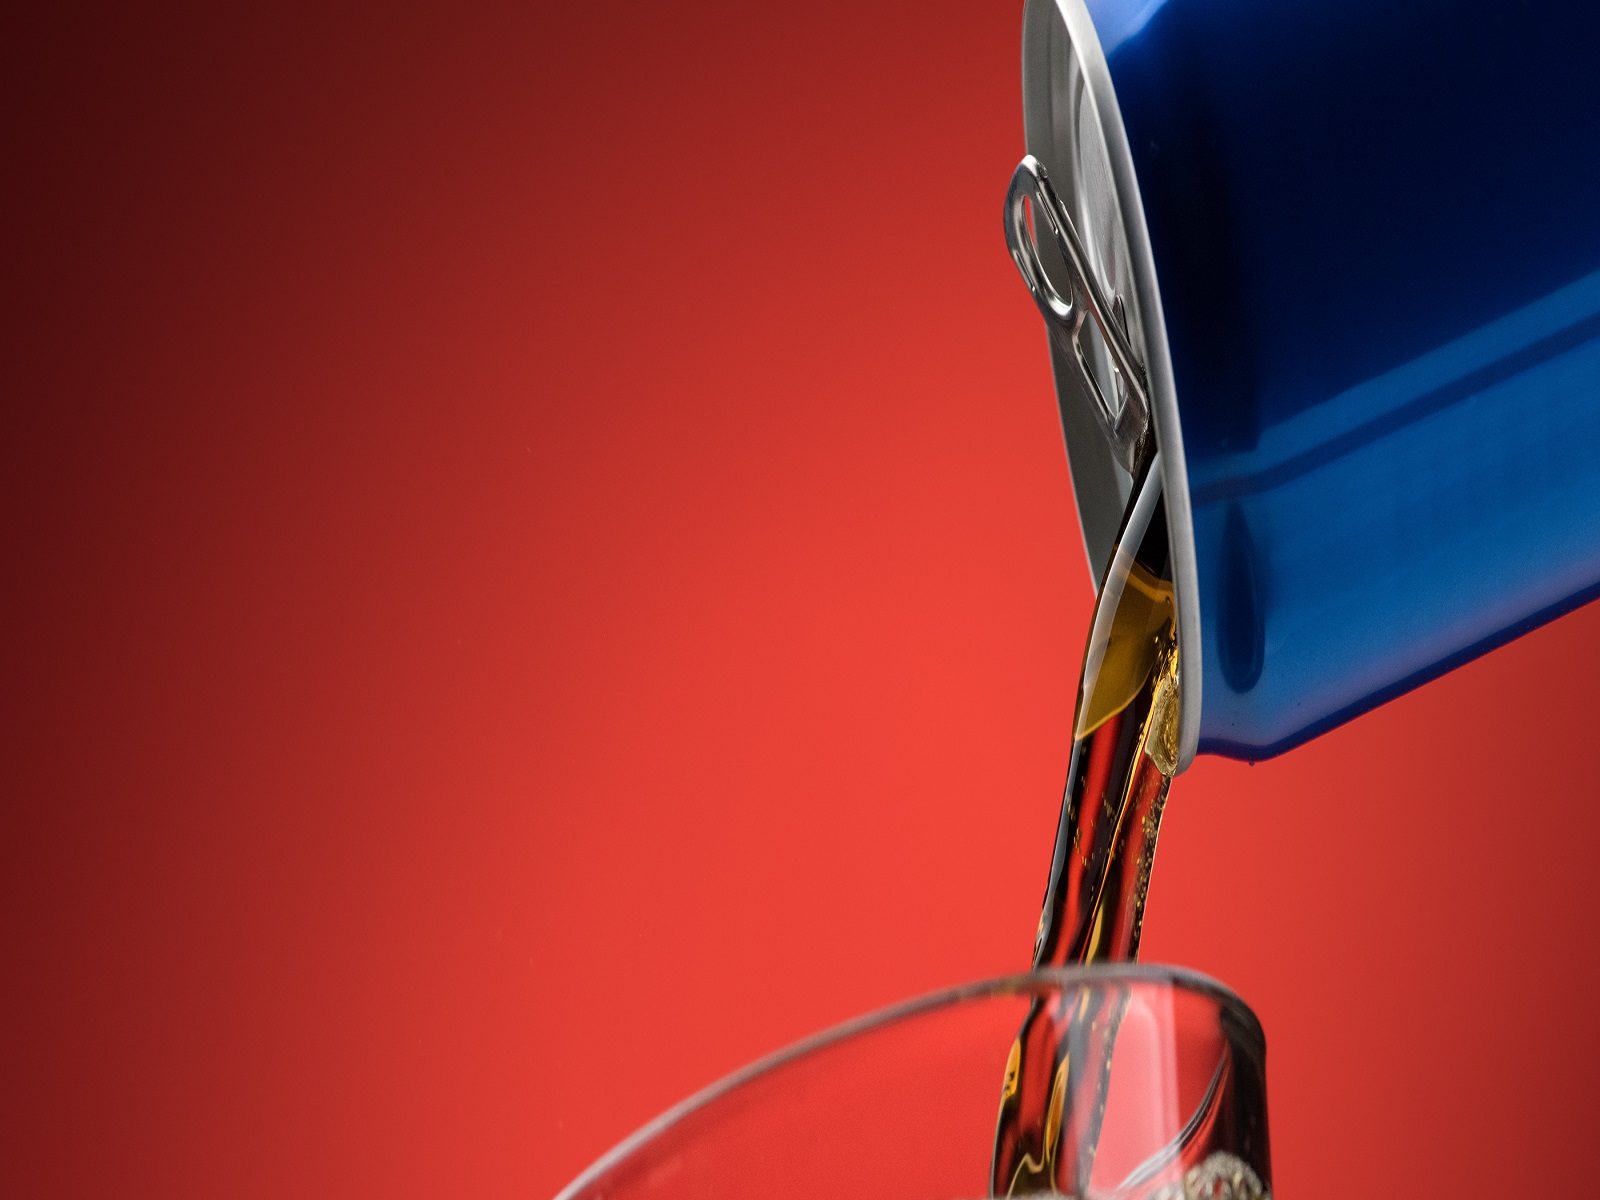 एक सप्ताह में एक या उससे कम डाइट ड्रिंक लेने वाली महिलाओं की तुलना में, दिन में दो या अधिक पेय पीने वाली महिलाओं में स्ट्रोक का रिस्क 23% बढ़ा हुआ था. (प्रतीकात्कम फोटो-shutterstock.com)